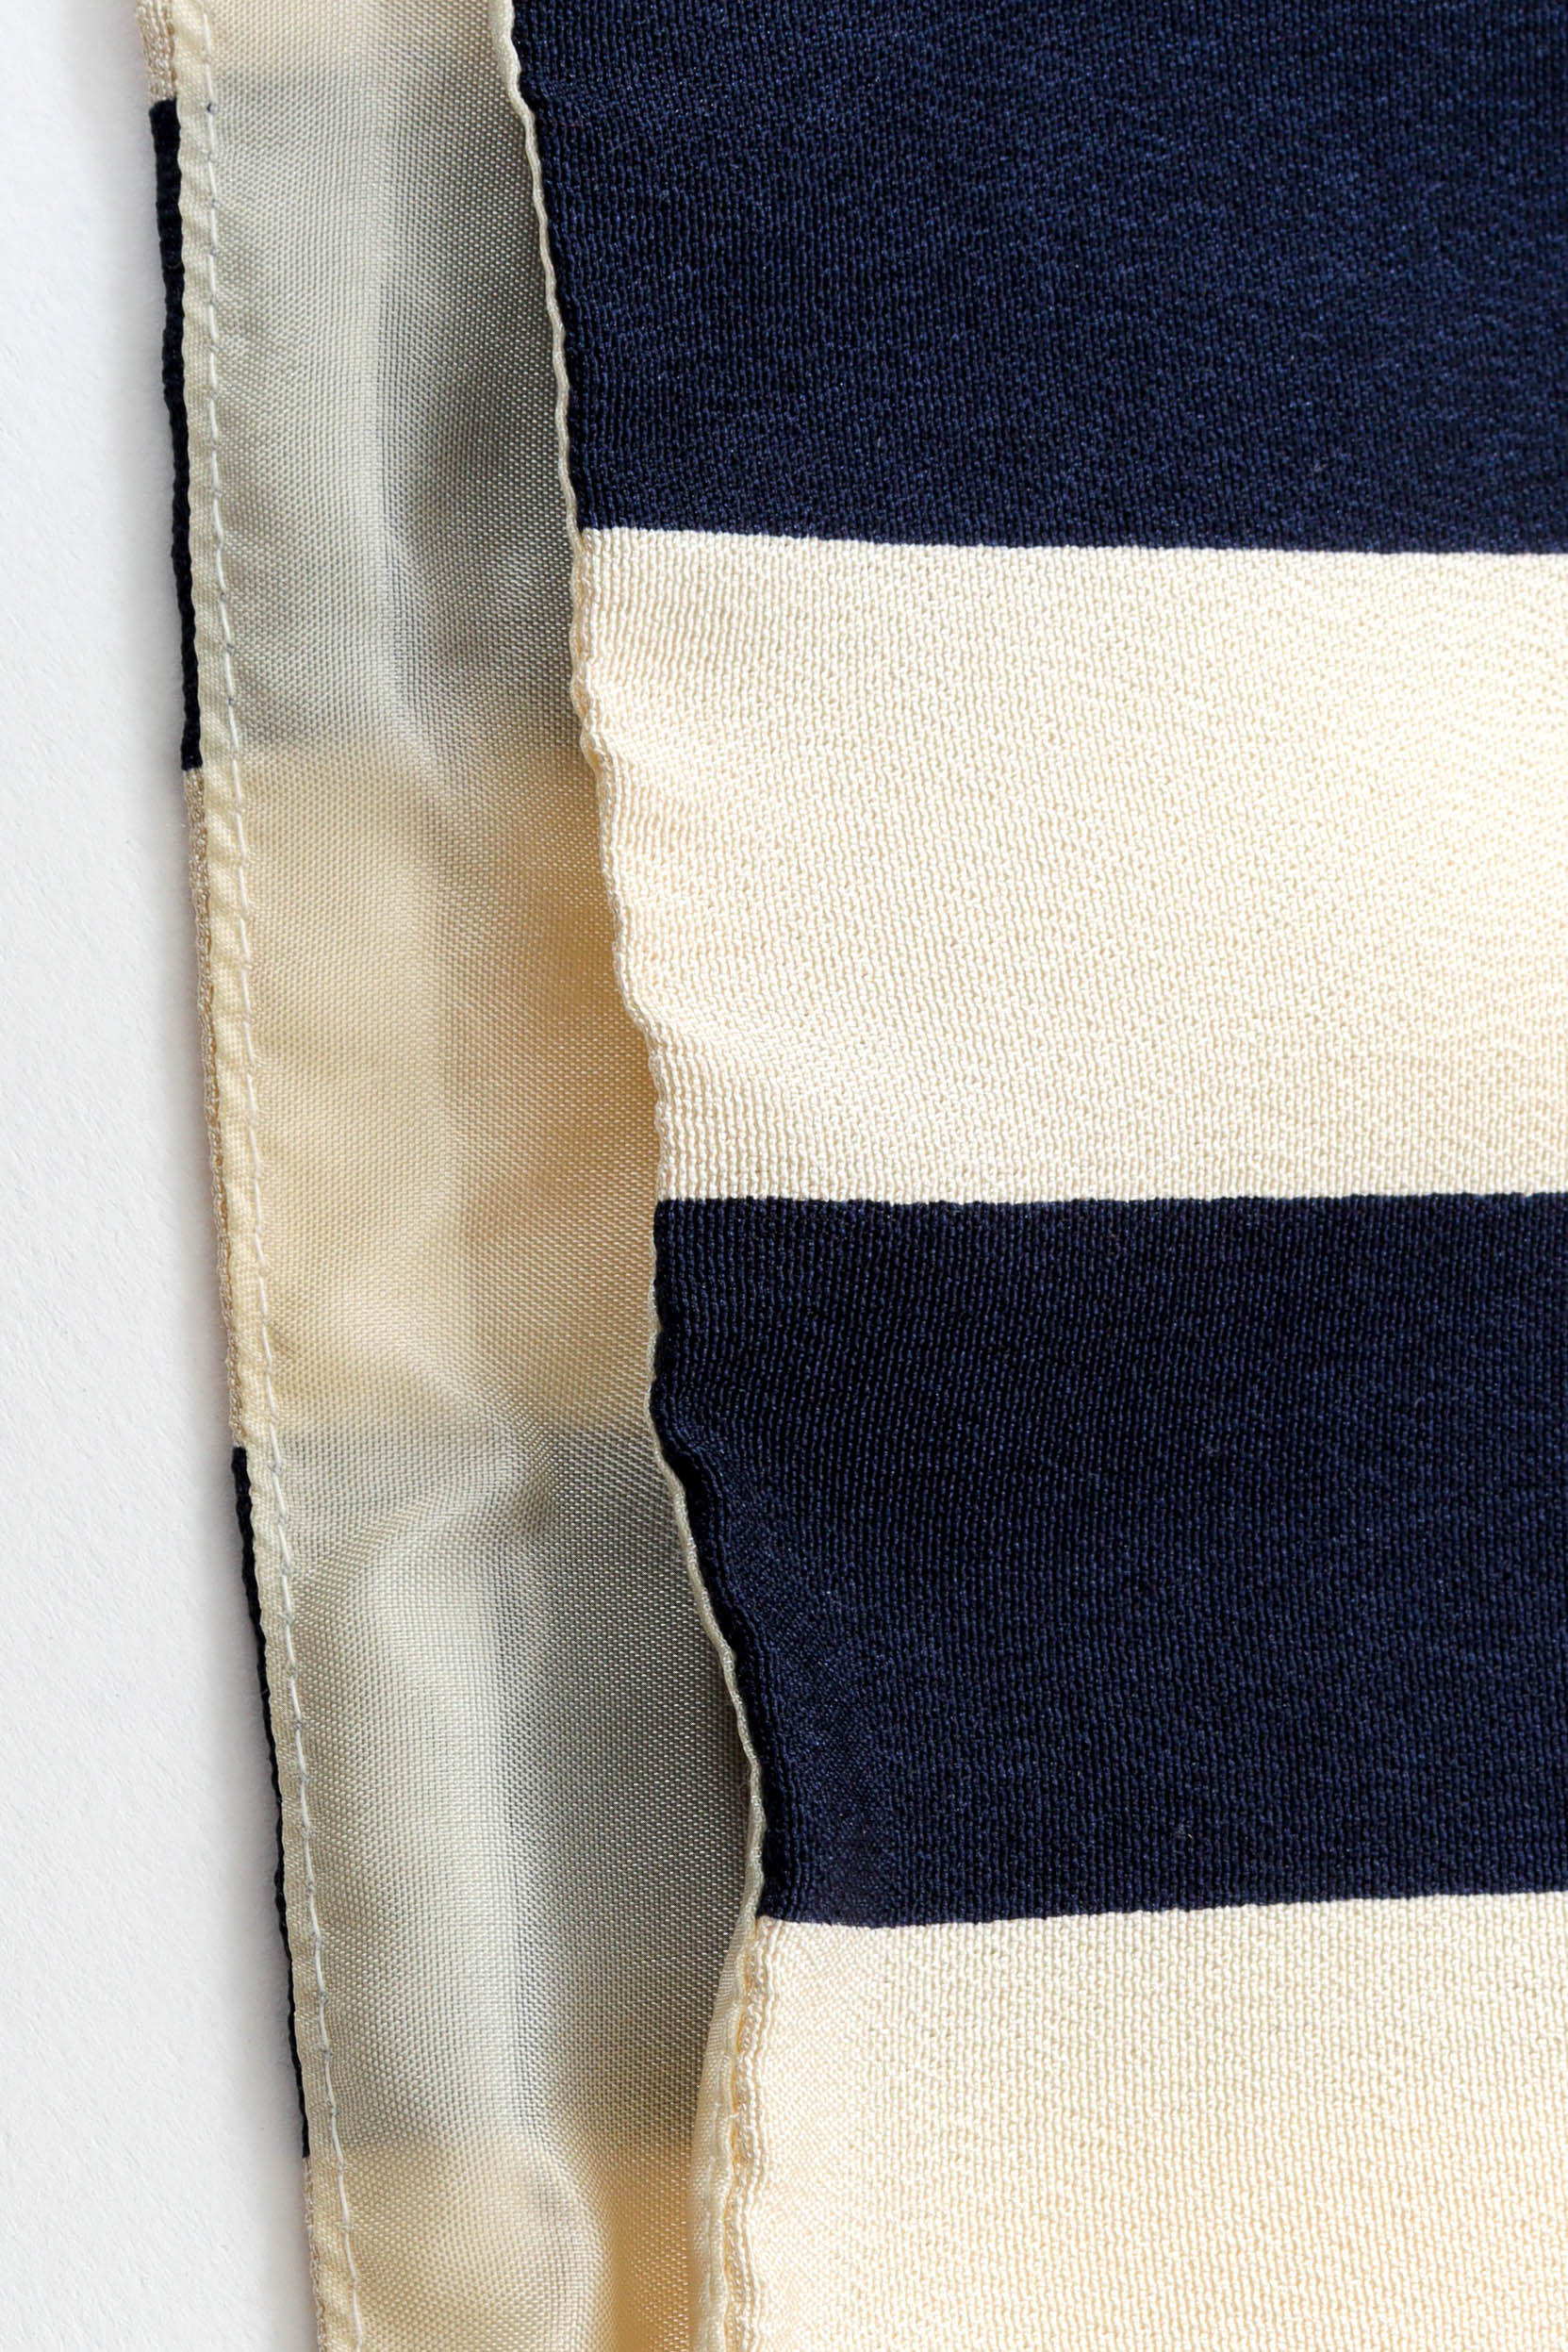 Vintage Hanae Mori Nautical Stripe Culotte flat front invisible hem line detail @ Recess LA